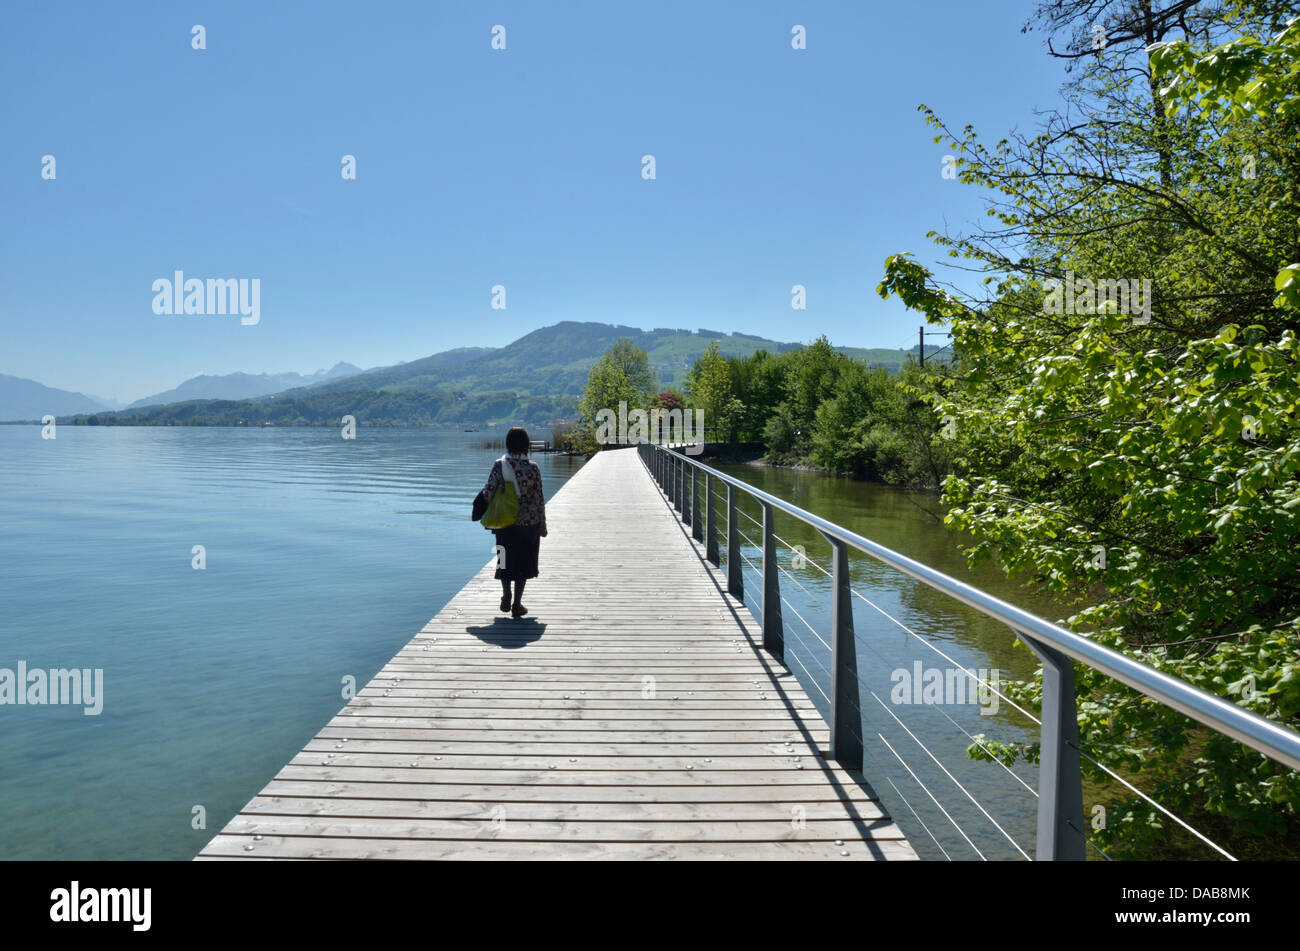 Causeway in legno sul lago di Zurigo vicino a Wädenswil, Svizzera Foto Stock